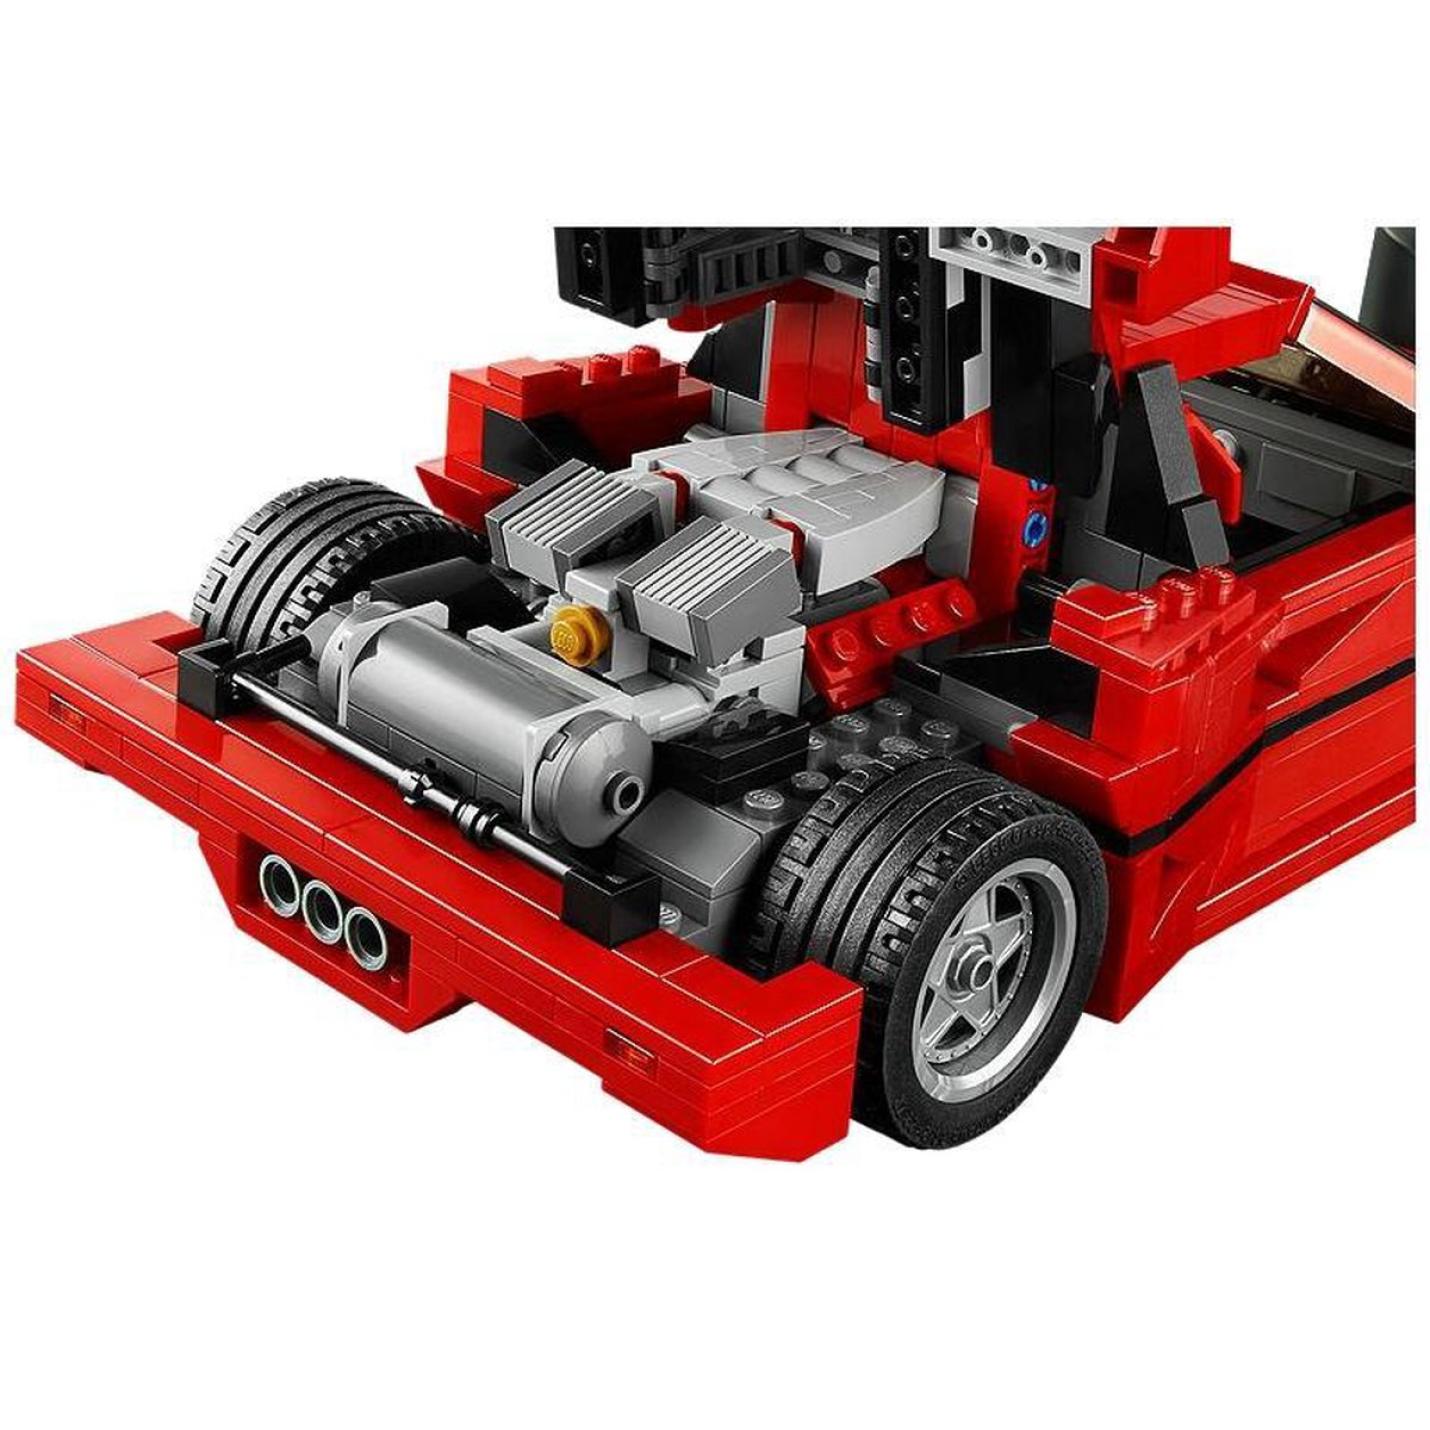 LEGO Creator Expert Ferrari F40 - 10248 1